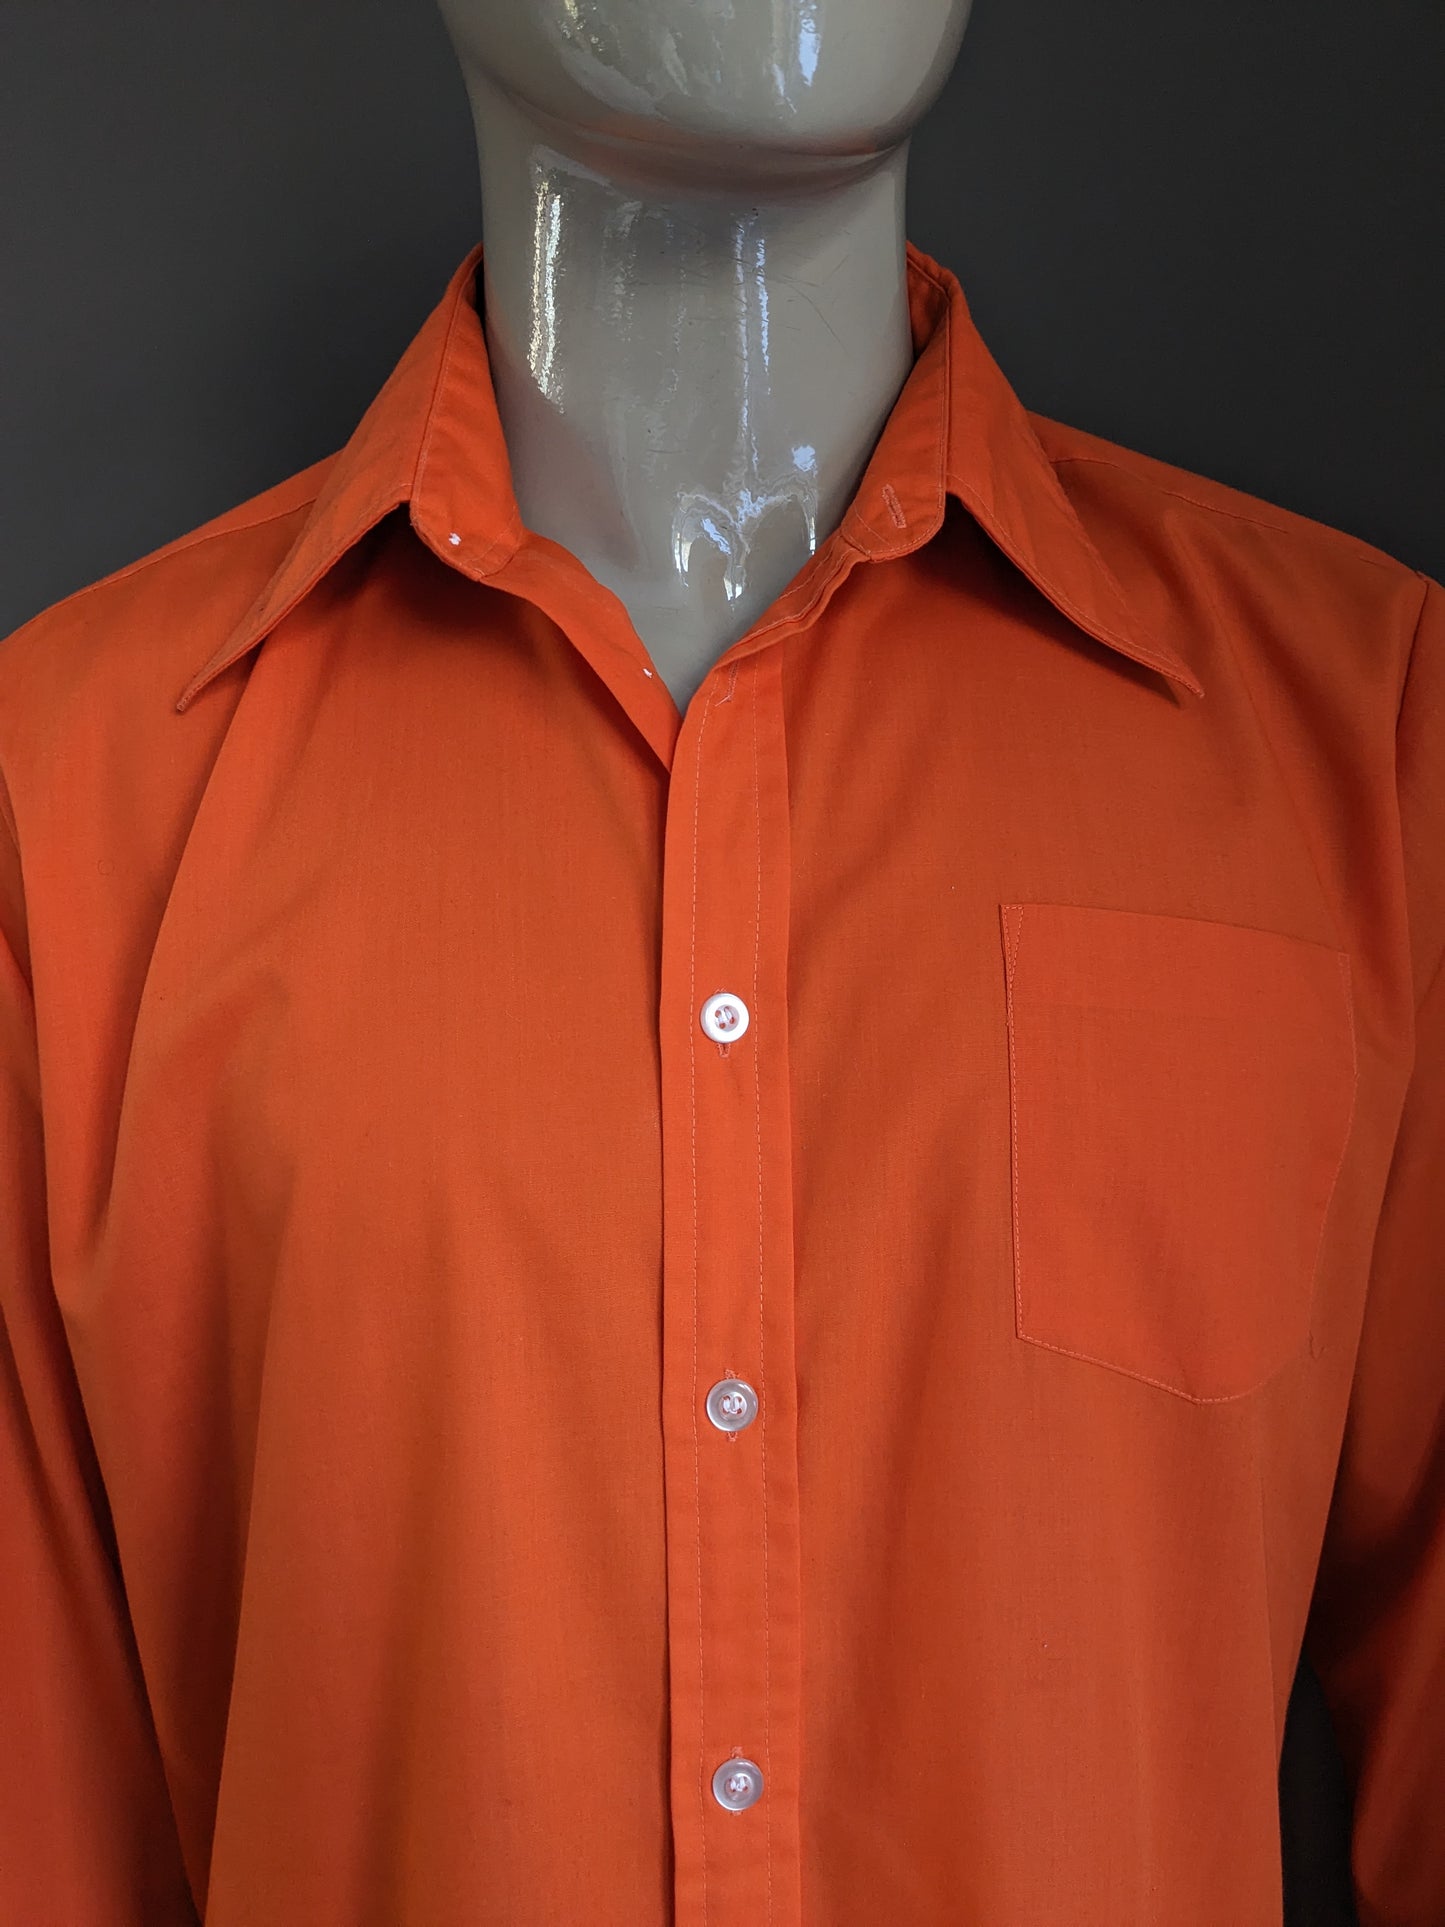 Shirt cupo vintage degli anni '70 con colletto punti. Colorato arancione. Taglia XL.